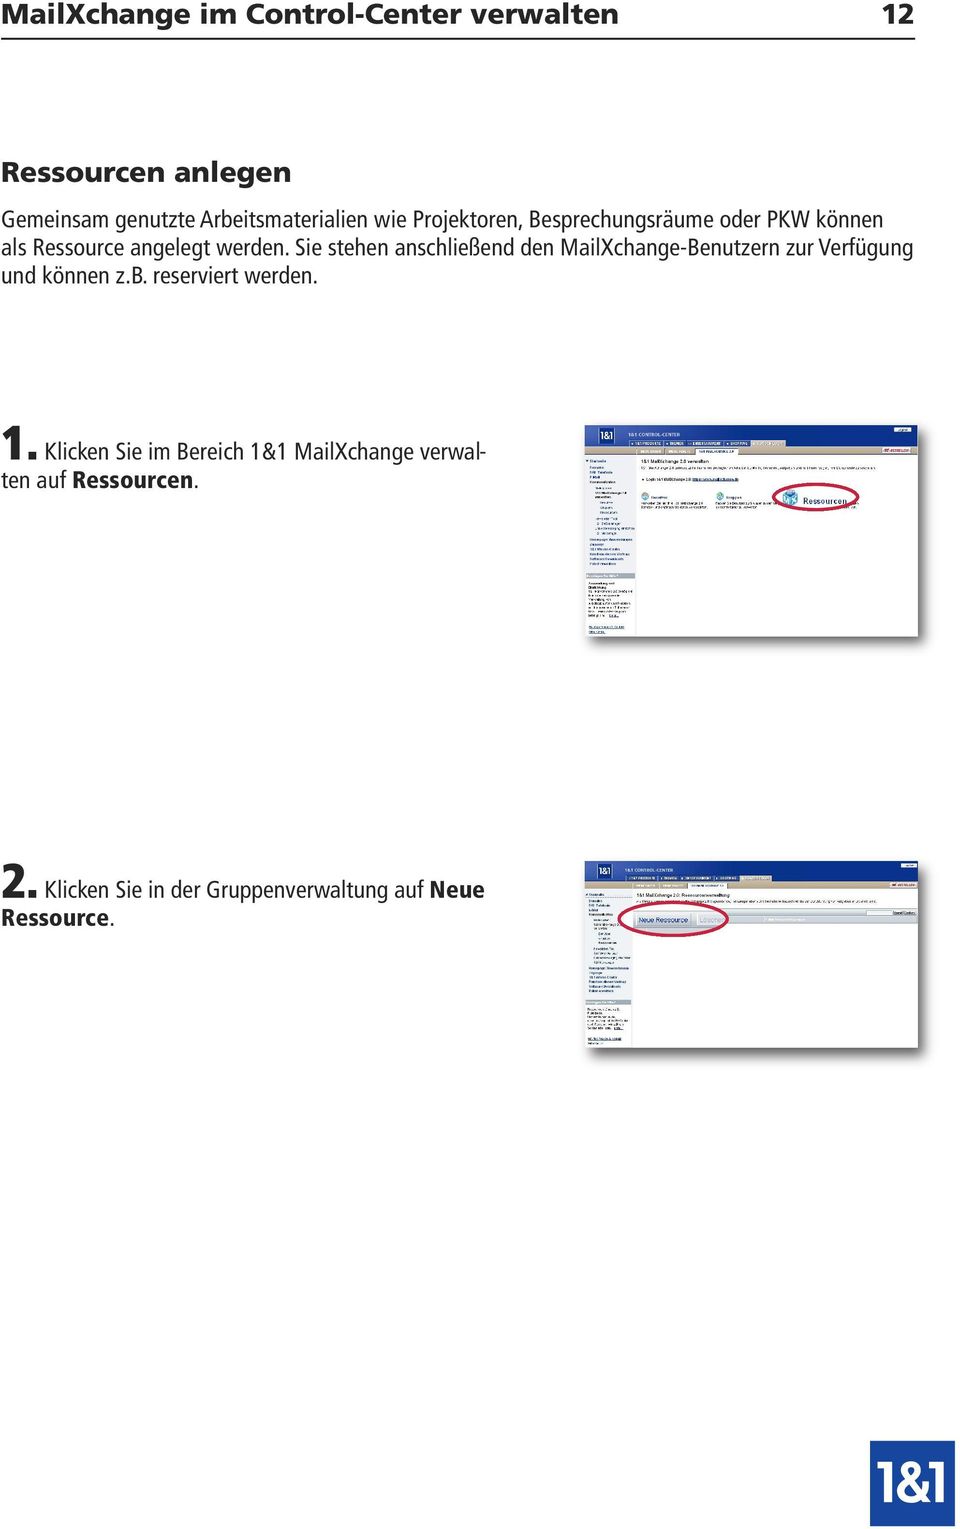 Sie stehen anschließend den MailXchange-Benutzern zur Verfügung und können z.b. reserviert werden. 1.